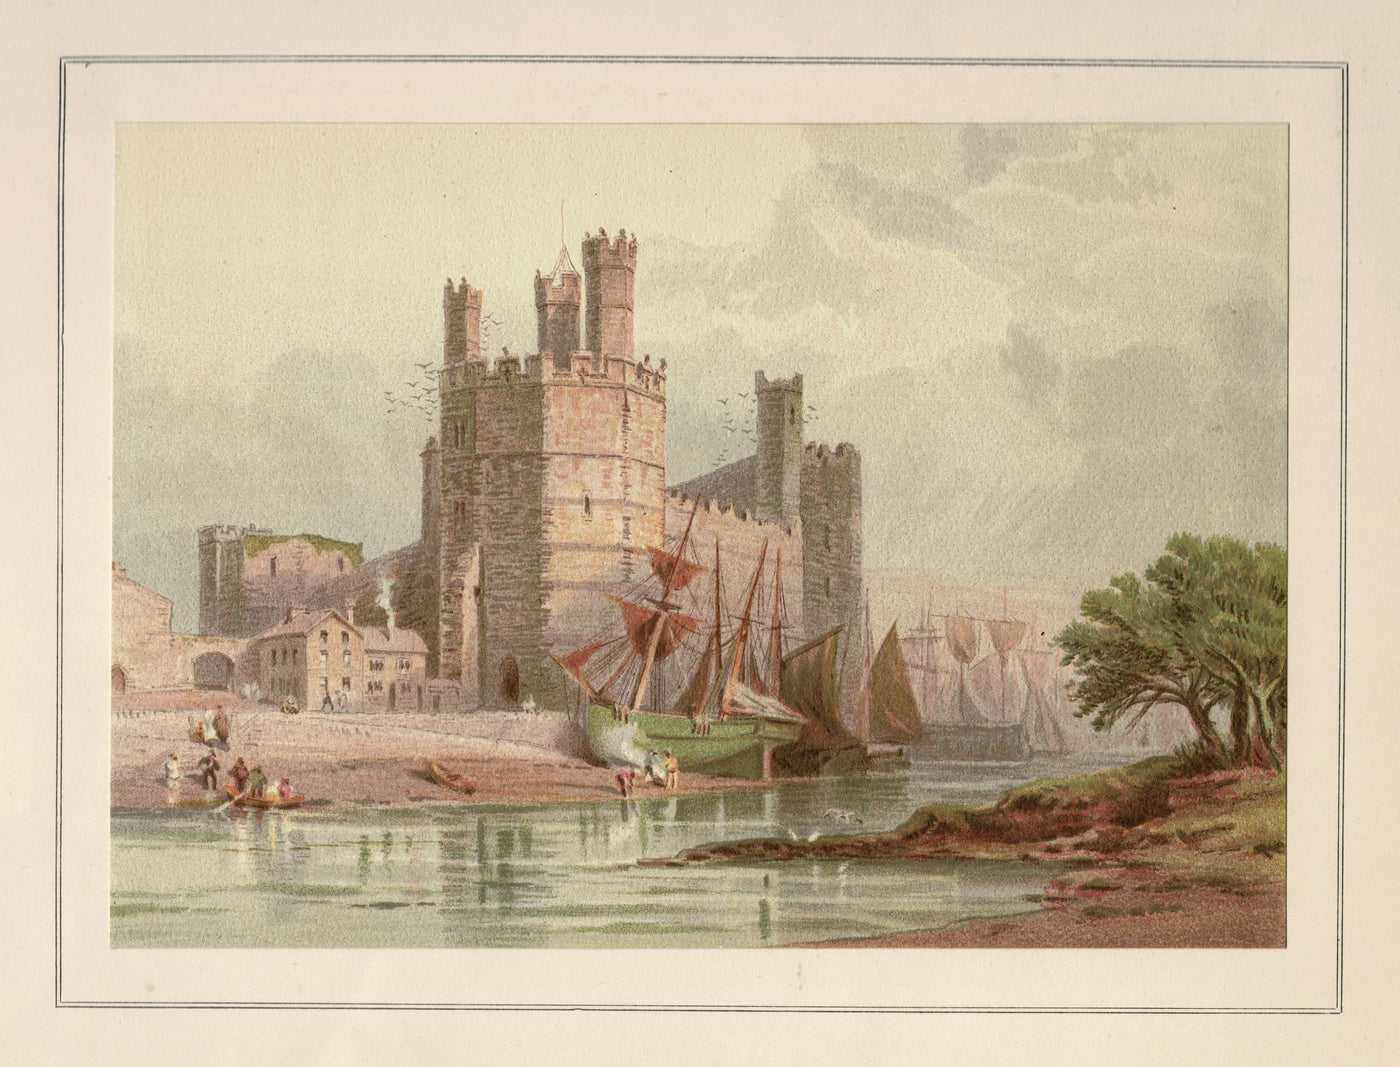 Carnarvon Caernarfon Castle Gwynedd Wales antique print 1879